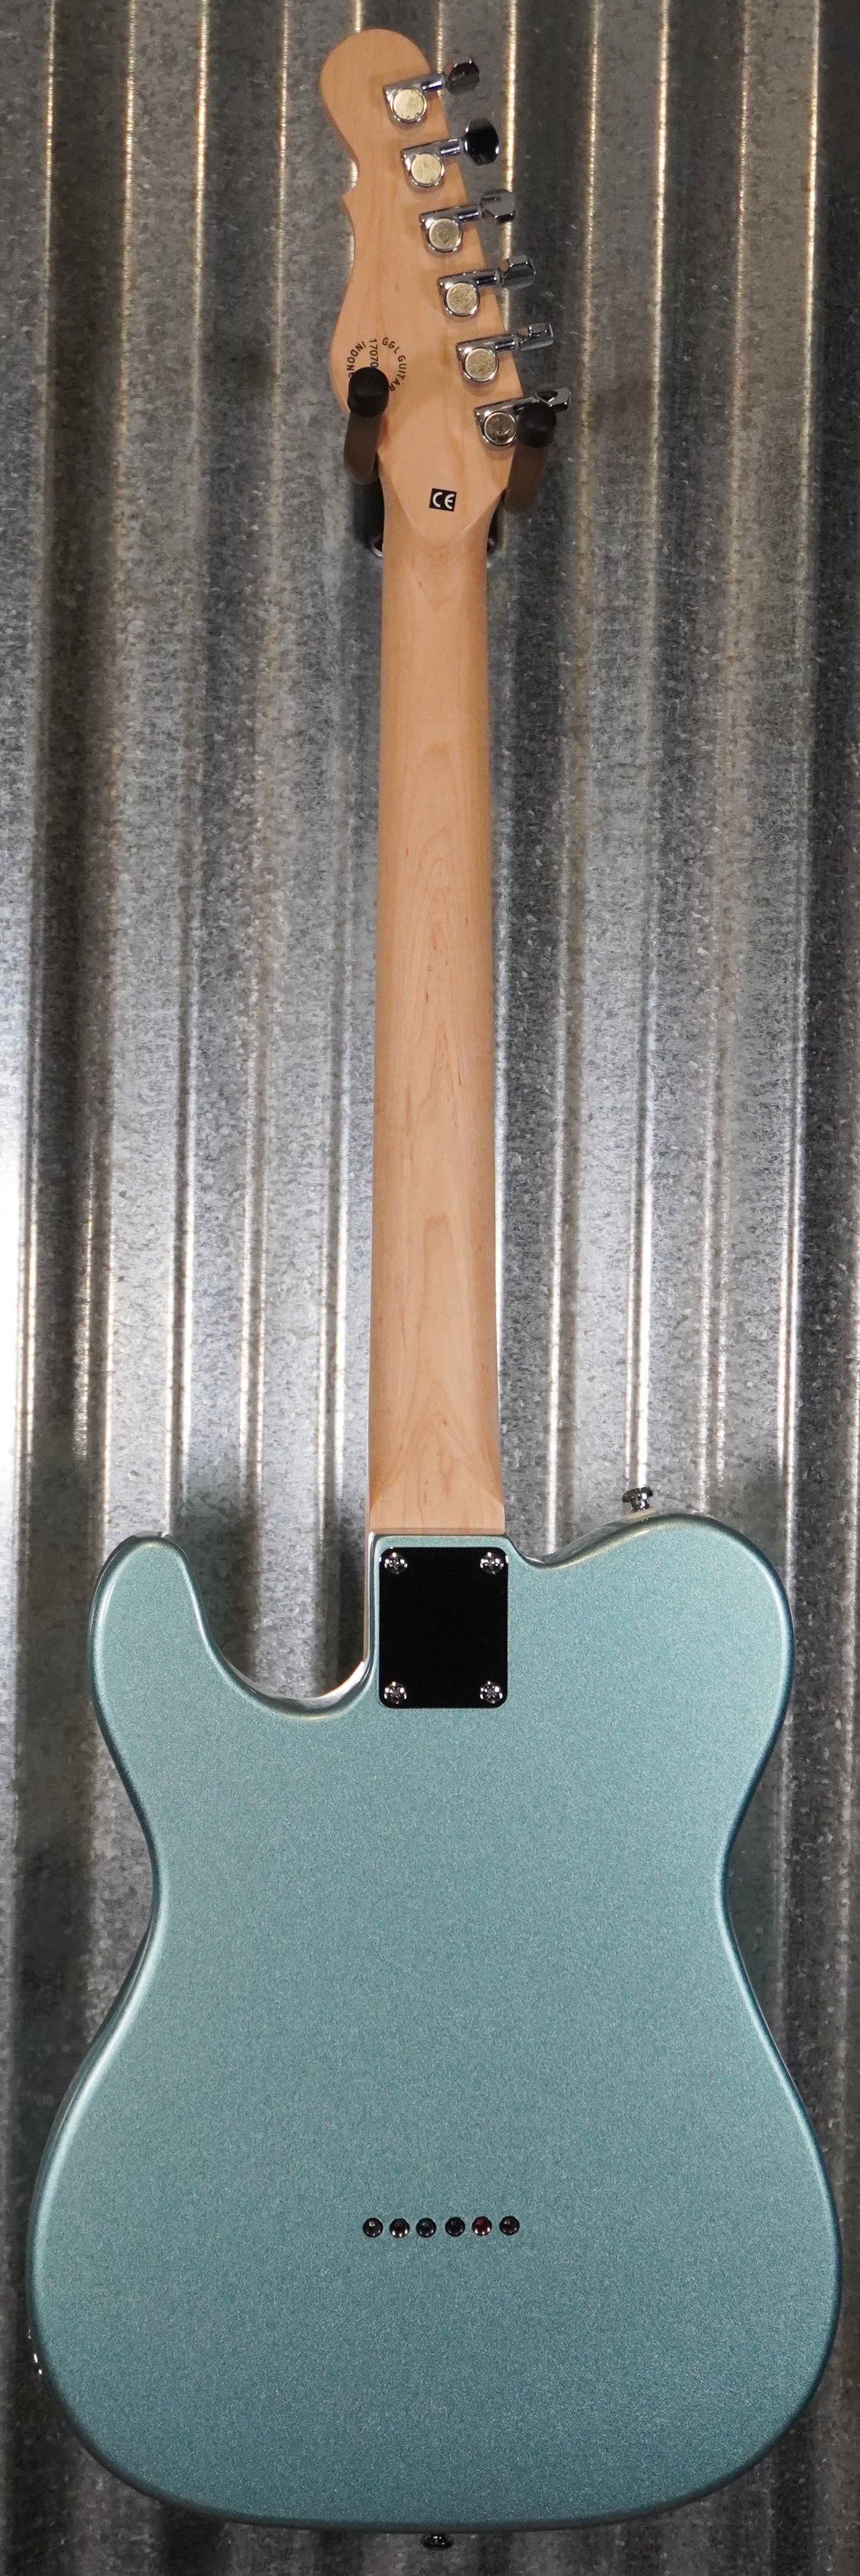 G&L Tribute ASAT Classic Bluesboy Seafoam Pearl Green Guitar Poplar #1518 Used